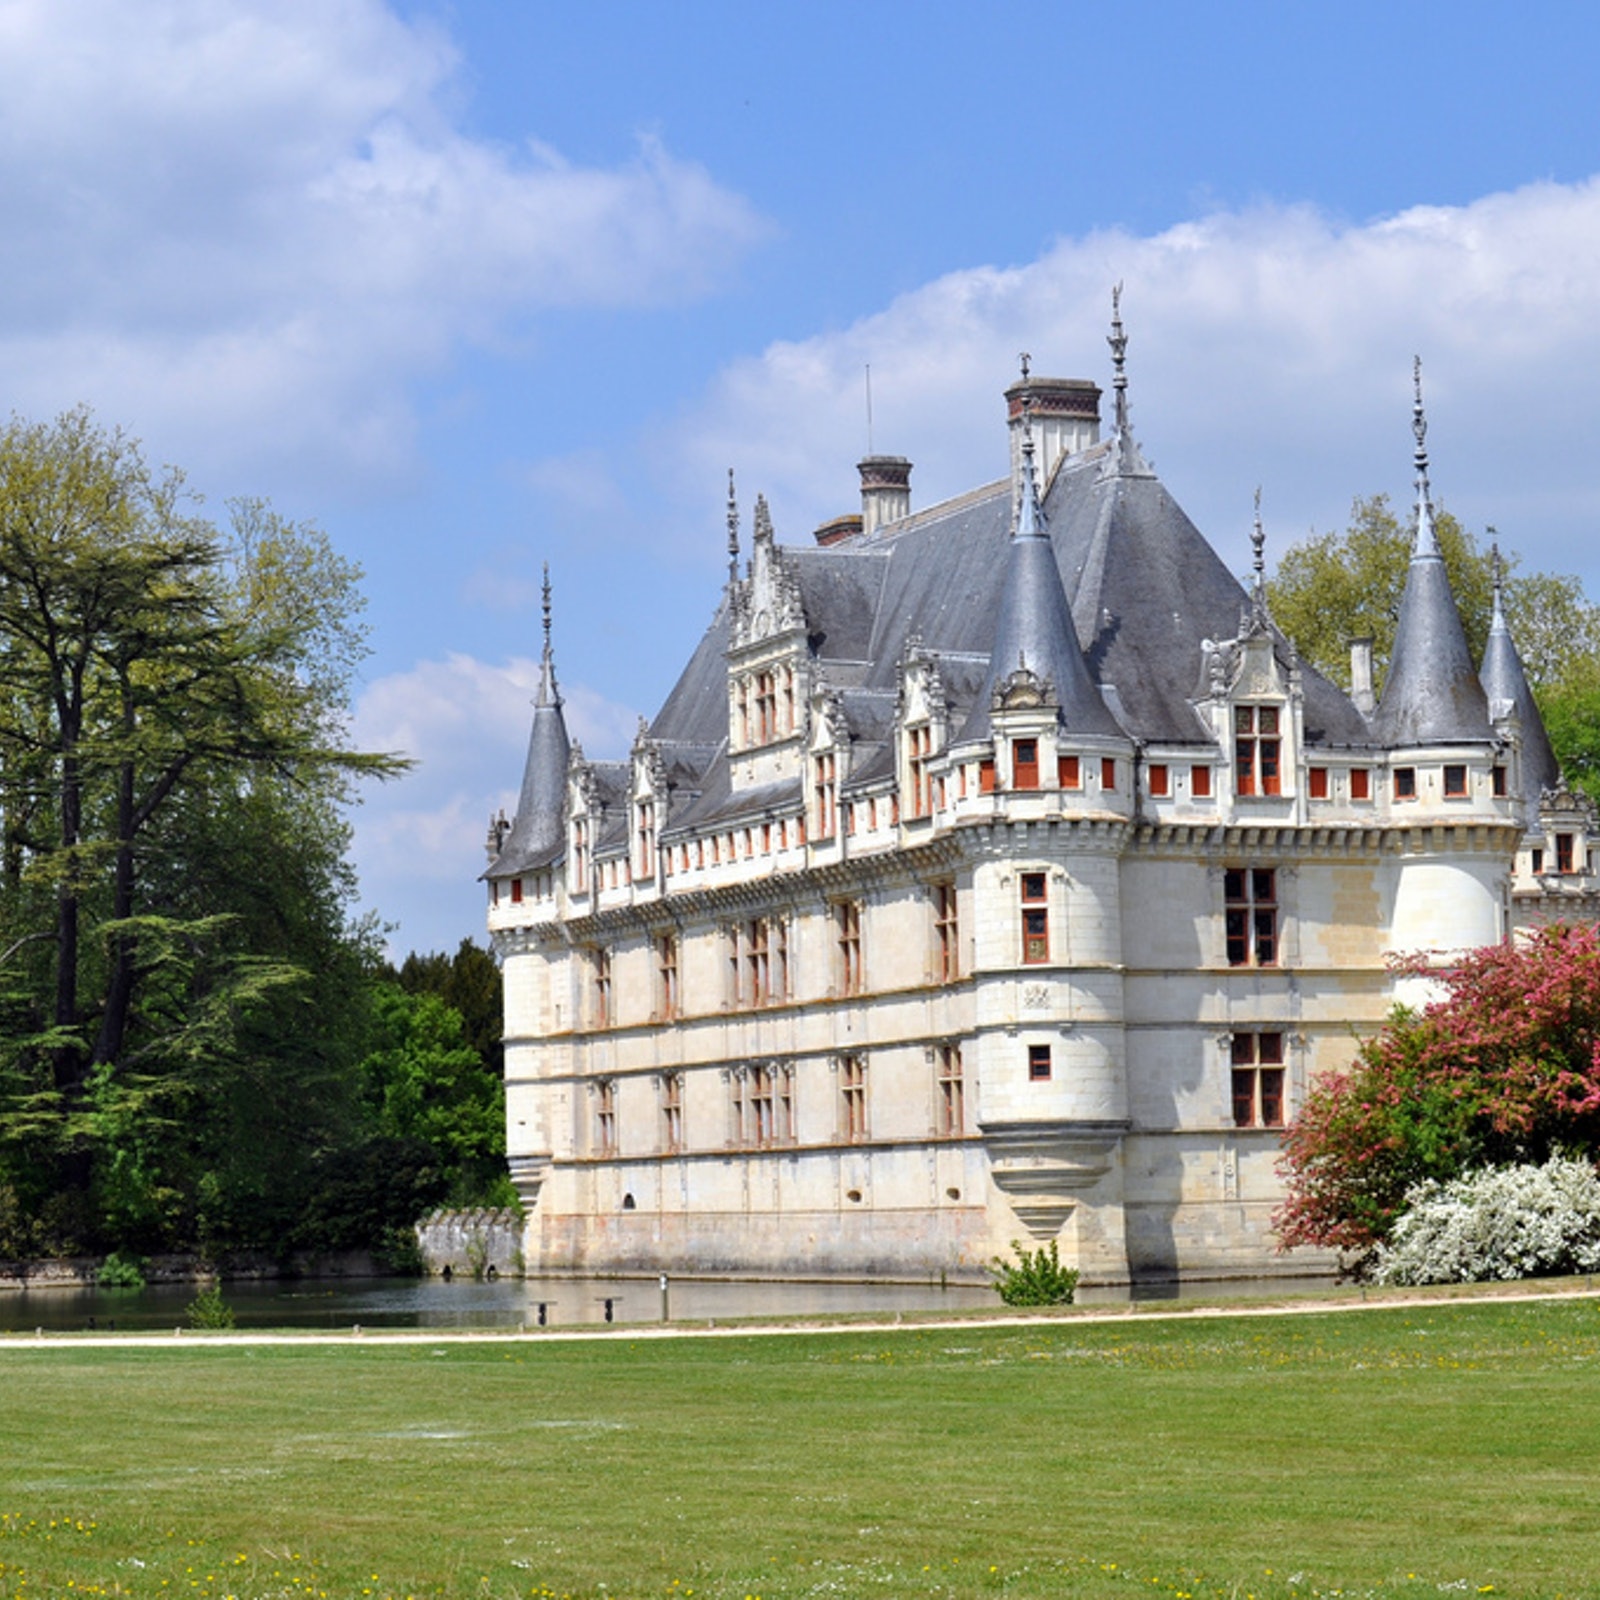 Château d’Azay-le-Rideau in France